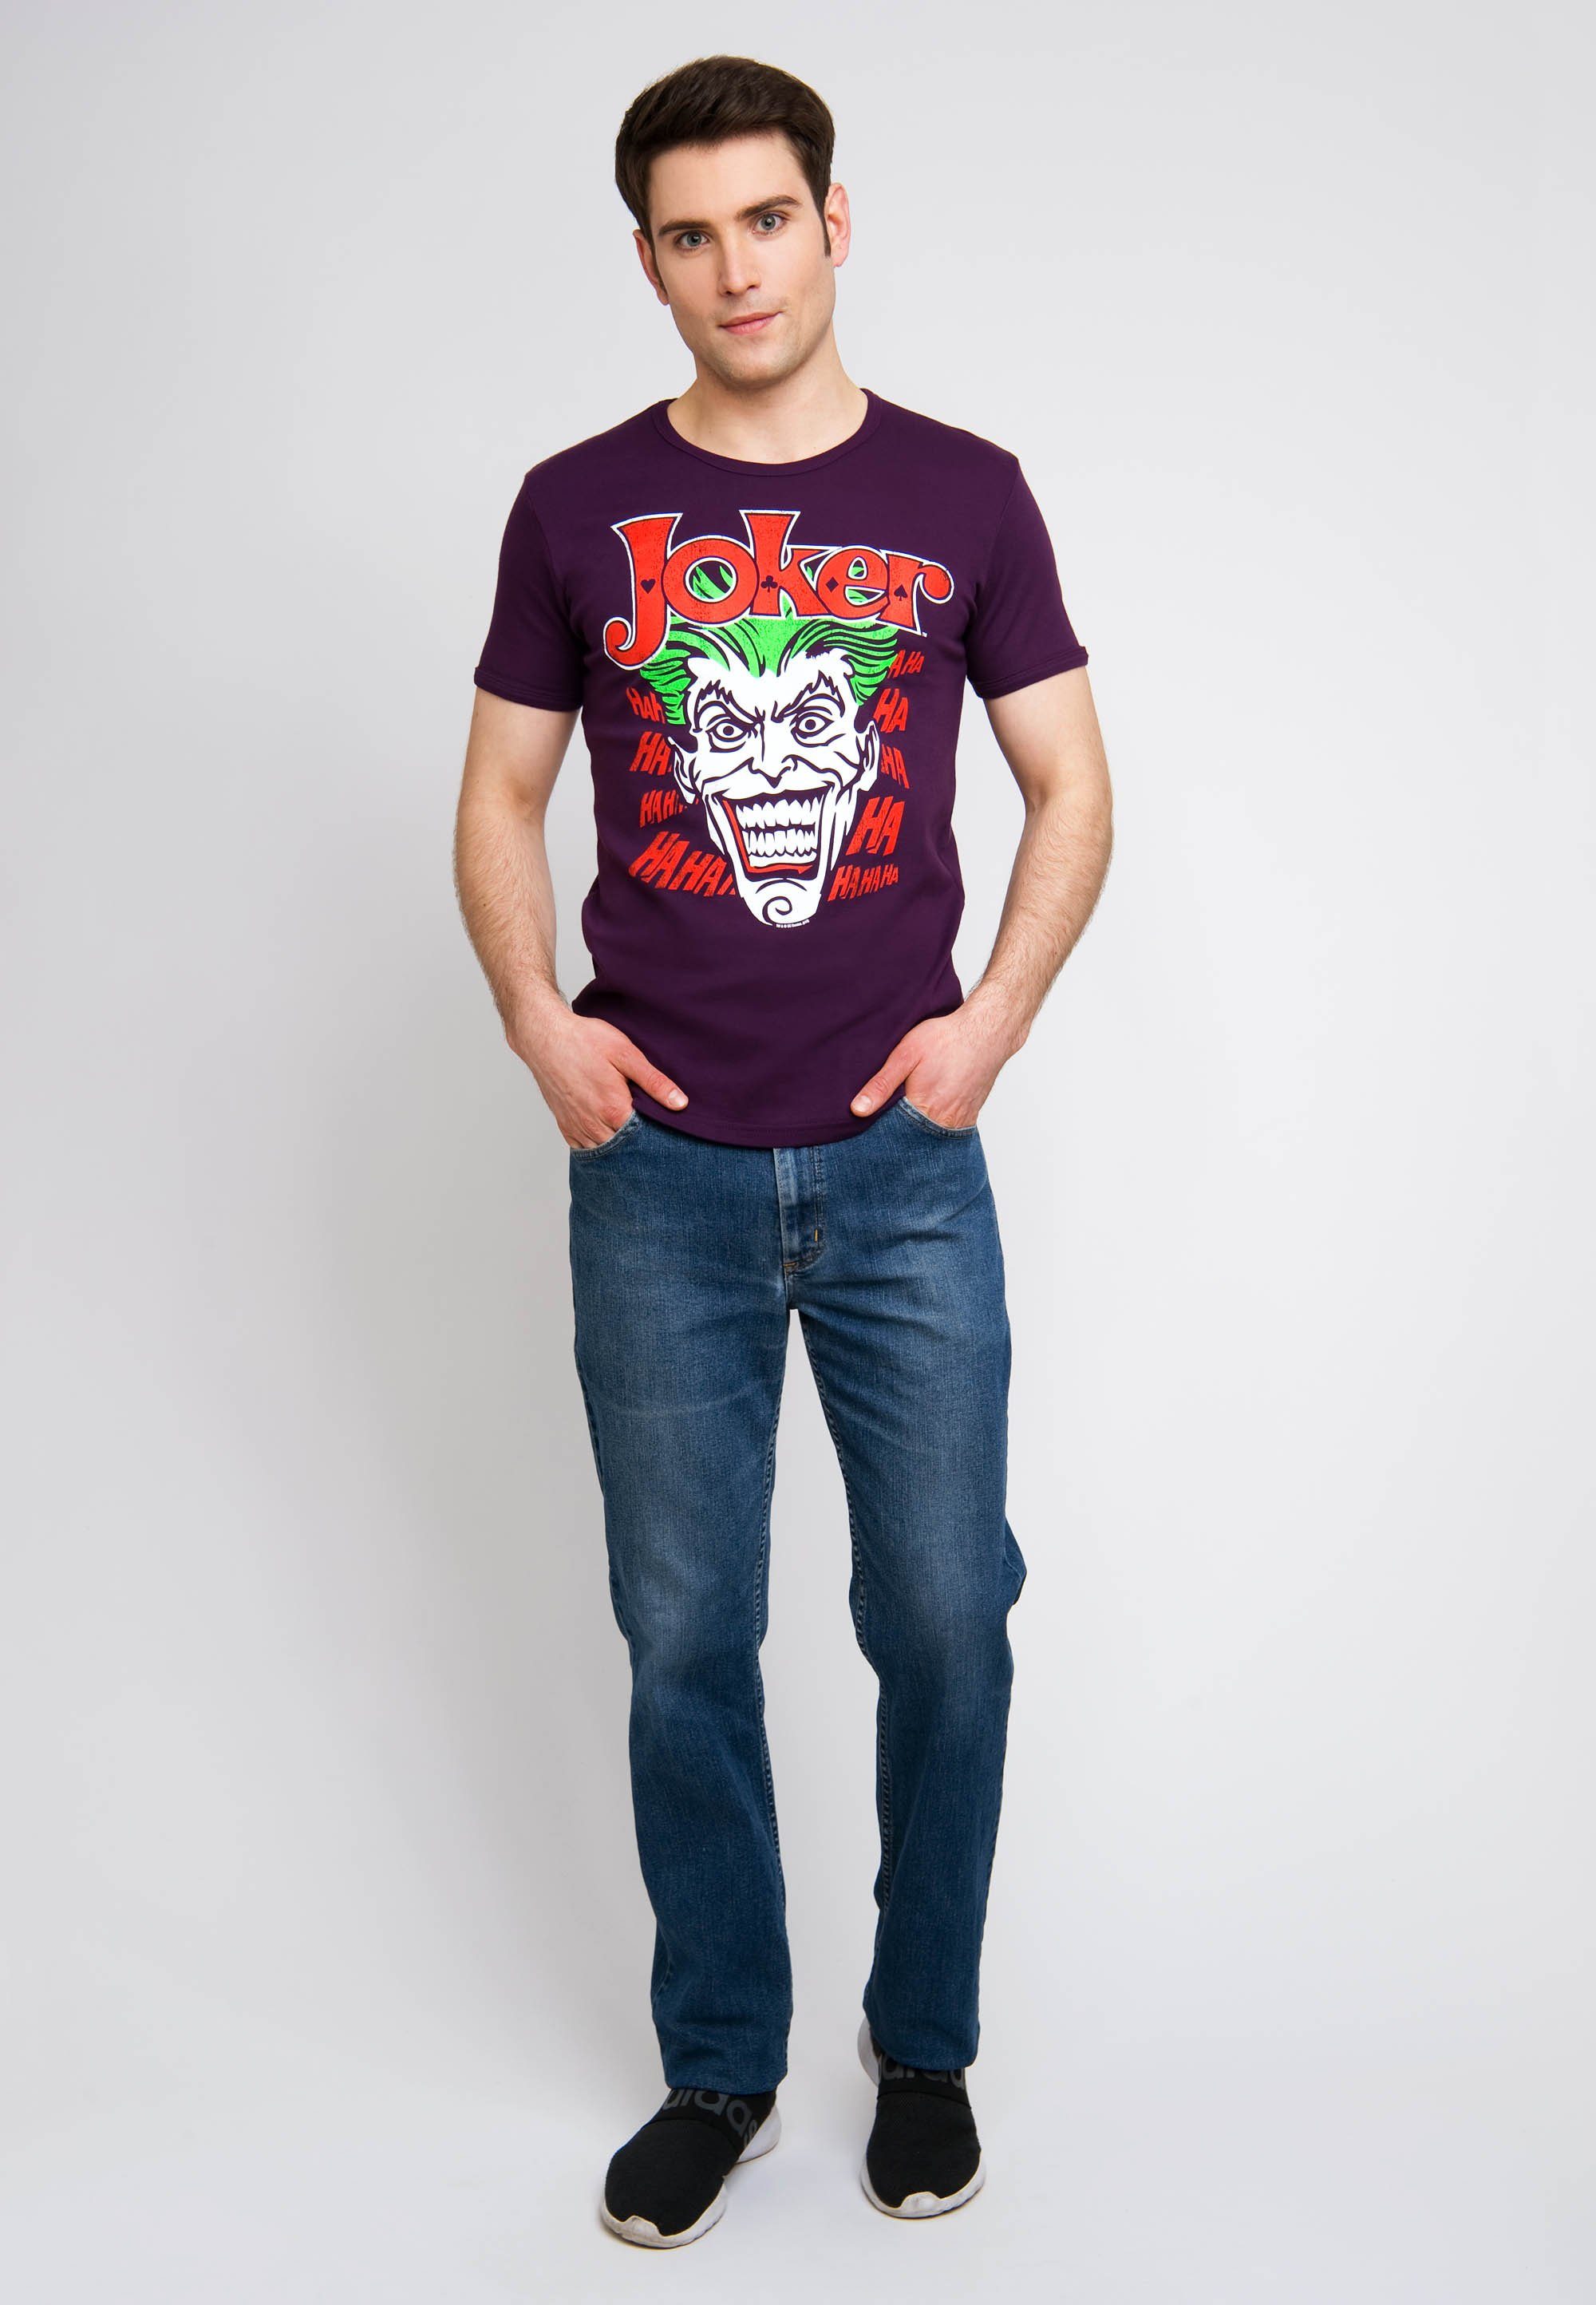 LOGOSHIRT T-Shirt Joker Batman mit Joker-Print kultigem bunt